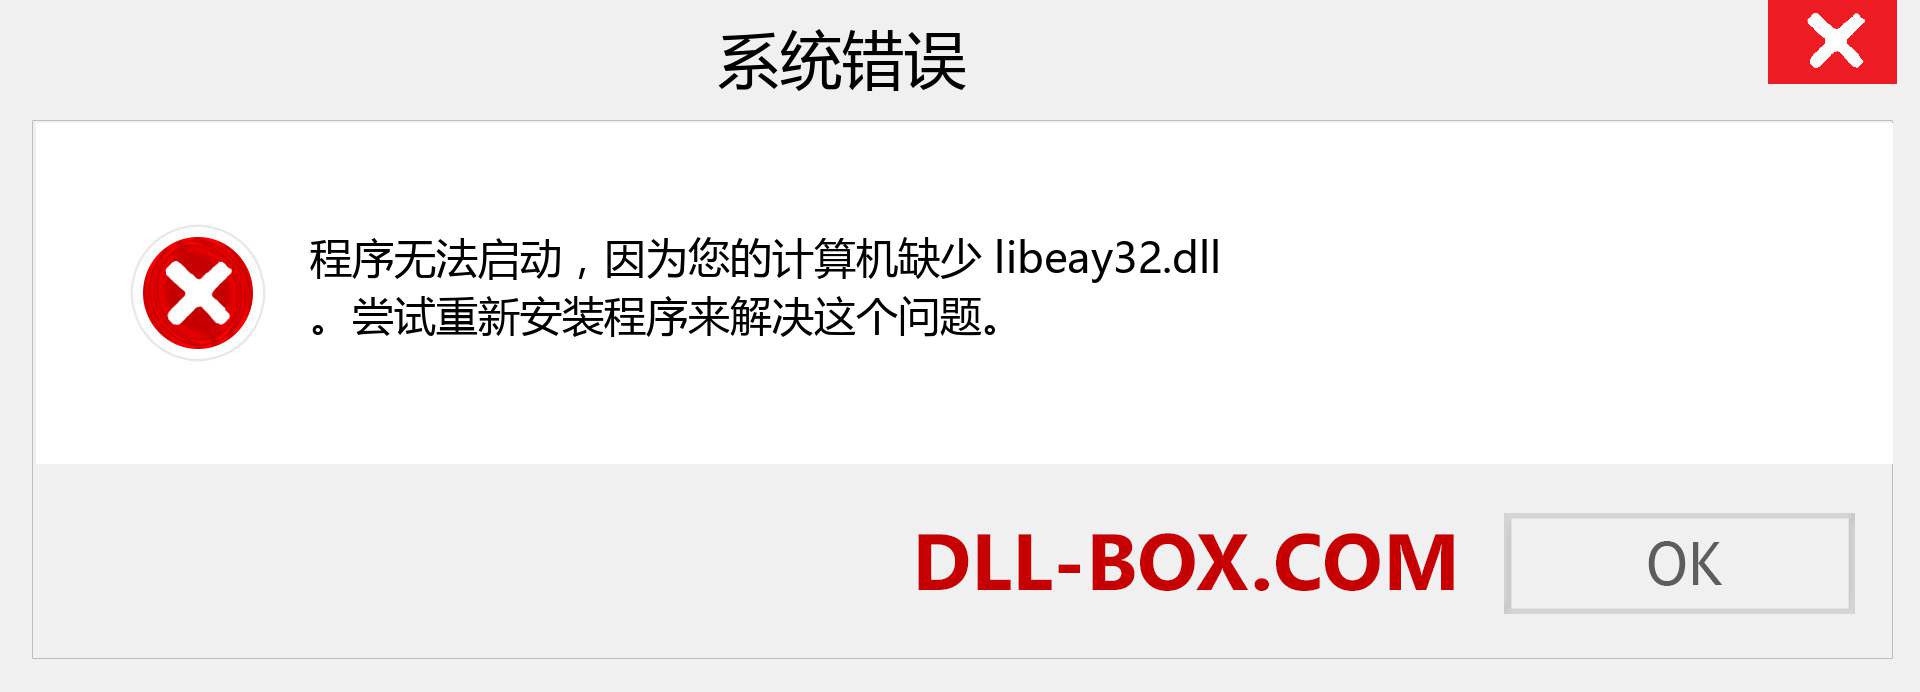 libeay32.dll 文件丢失？。 适用于 Windows 7、8、10 的下载 - 修复 Windows、照片、图像上的 libeay32 dll 丢失错误